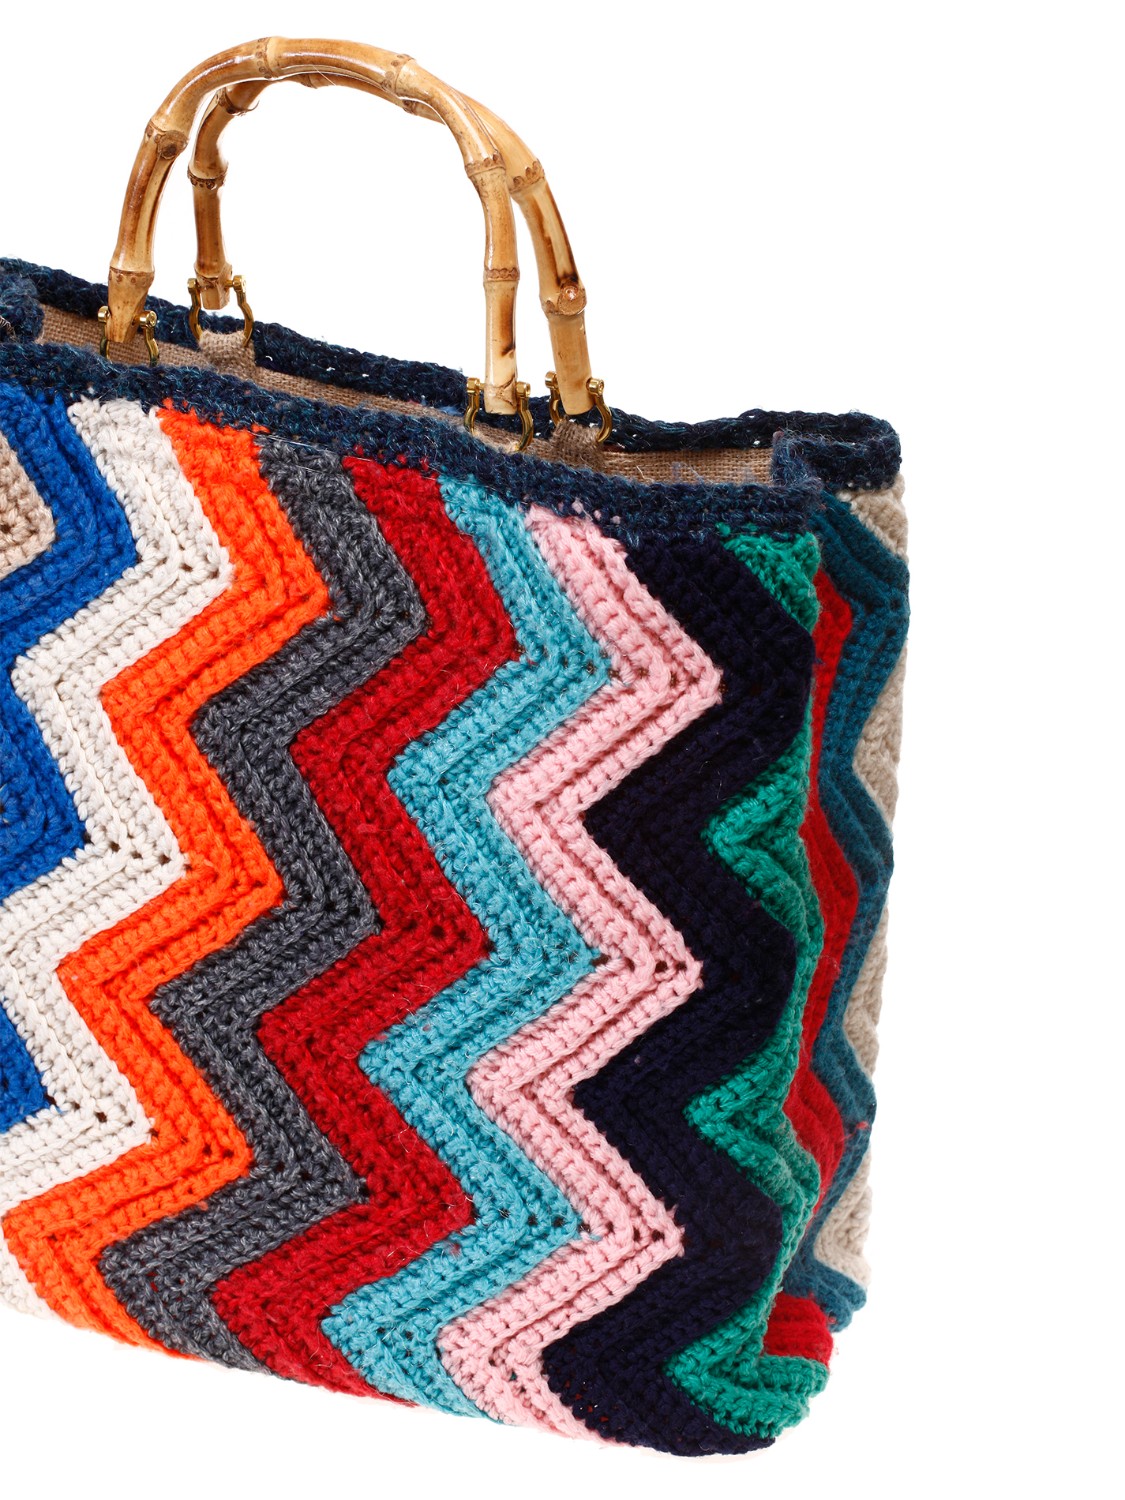 shop LA MILANESA Saldi Borsa: La Milanesa borsa Crochet XW1.
Dimensioni: altezza 38 cm larghezza 42 cm profondità 12 cm.
Composizione: 100% lana.
Made in Italy.. XW1 LADY CROCHET-1 number 5122462